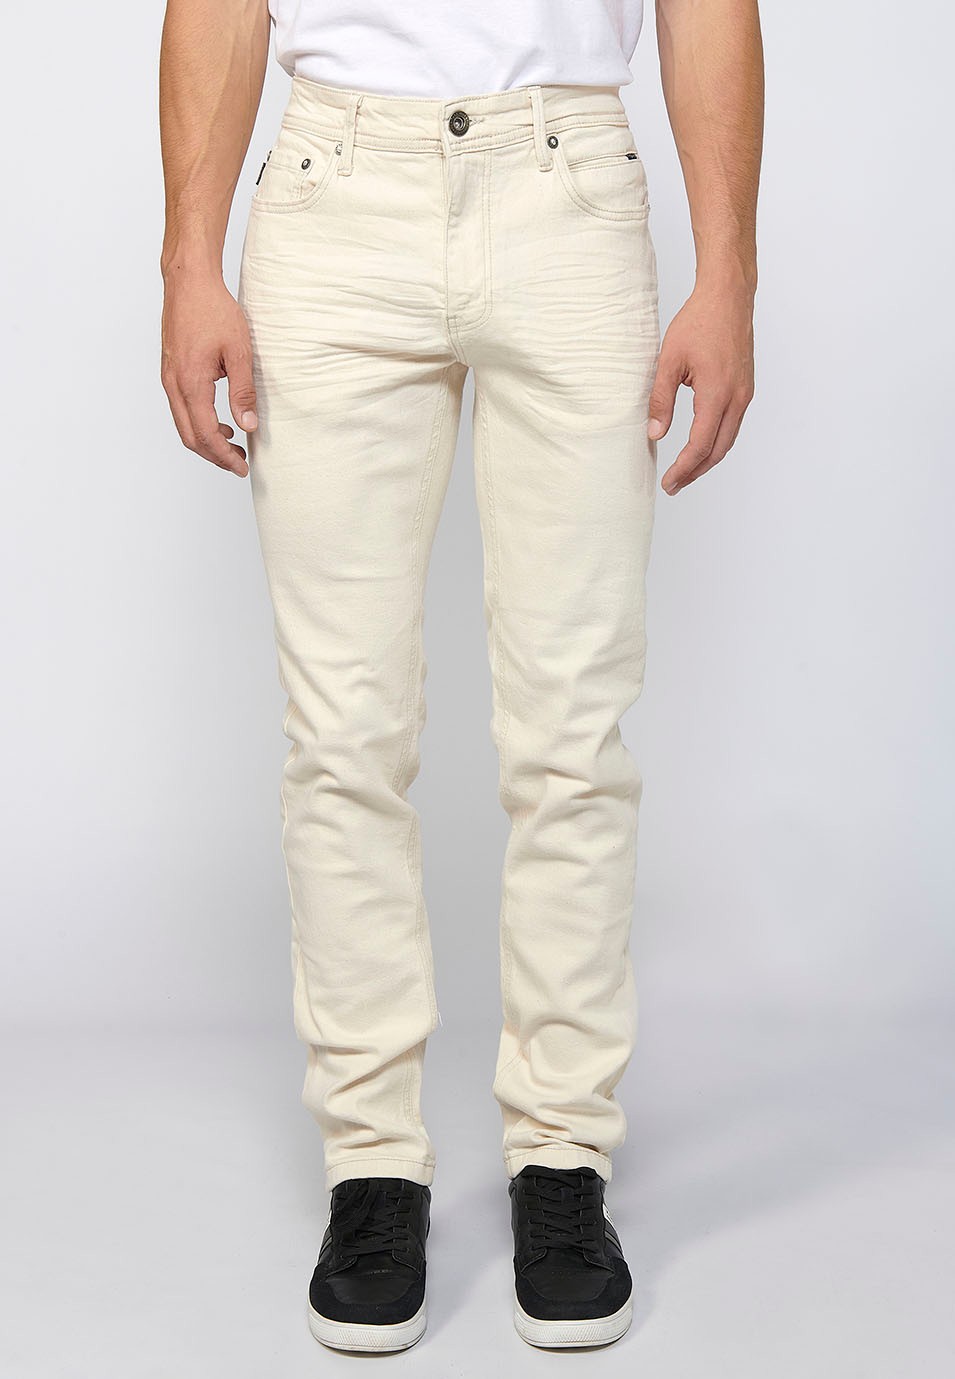 Pantalon long droit coupe classique avec fermeture zippée sur le devant et bouton écru pour Homme 1